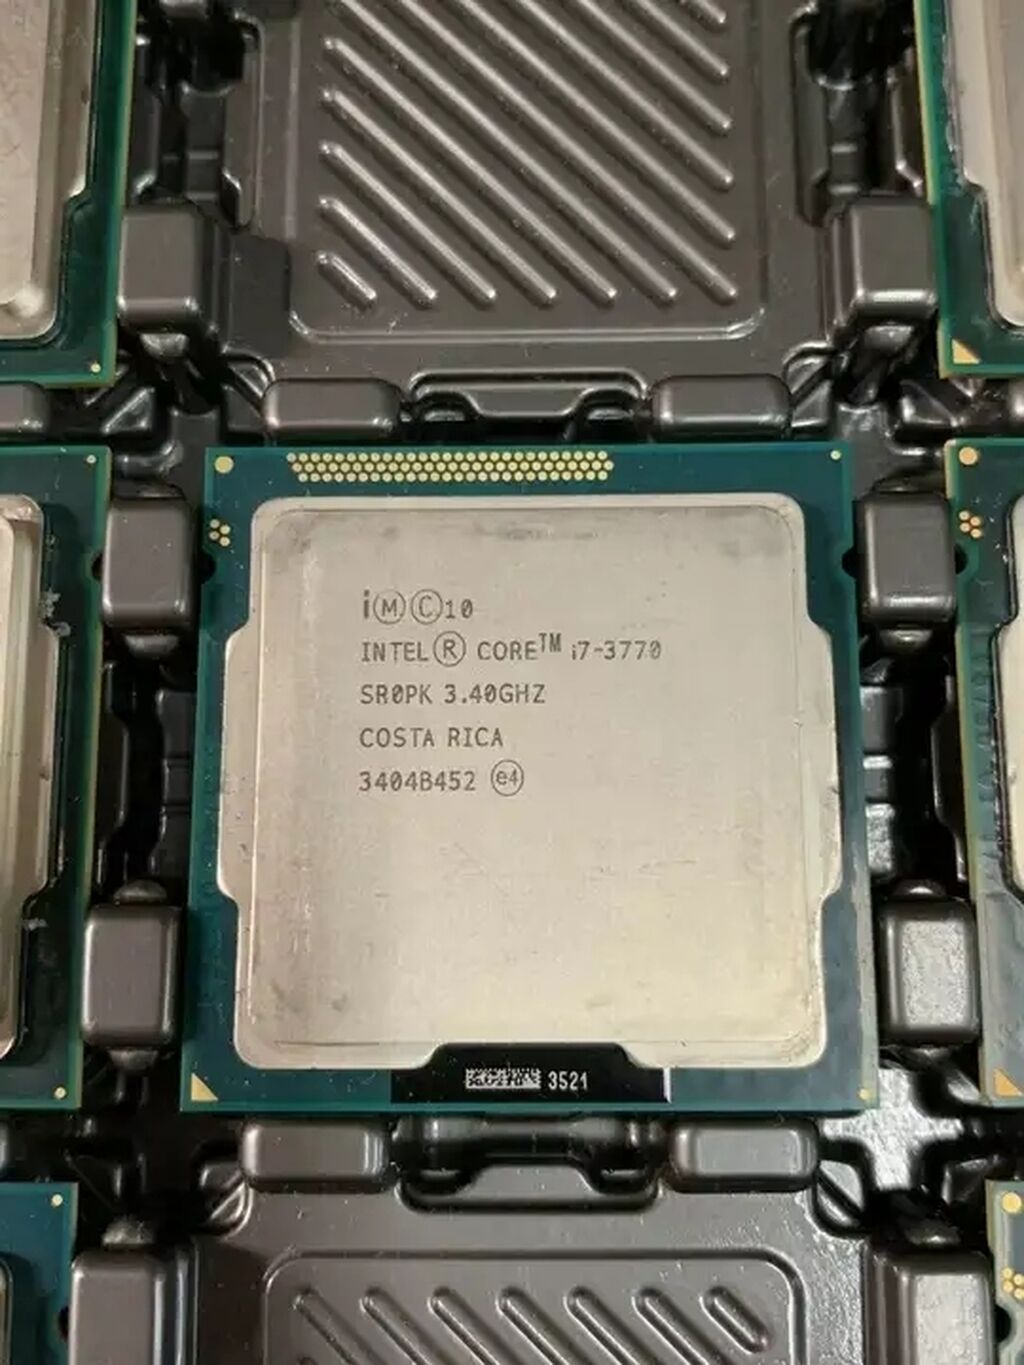 Интел i7 3770. Intel Core i7-3770. Процессор: Intel Core i7-3770 CPU. Intel i7 3770 3.4GHZ. Intel Core i7-3770 OEM.